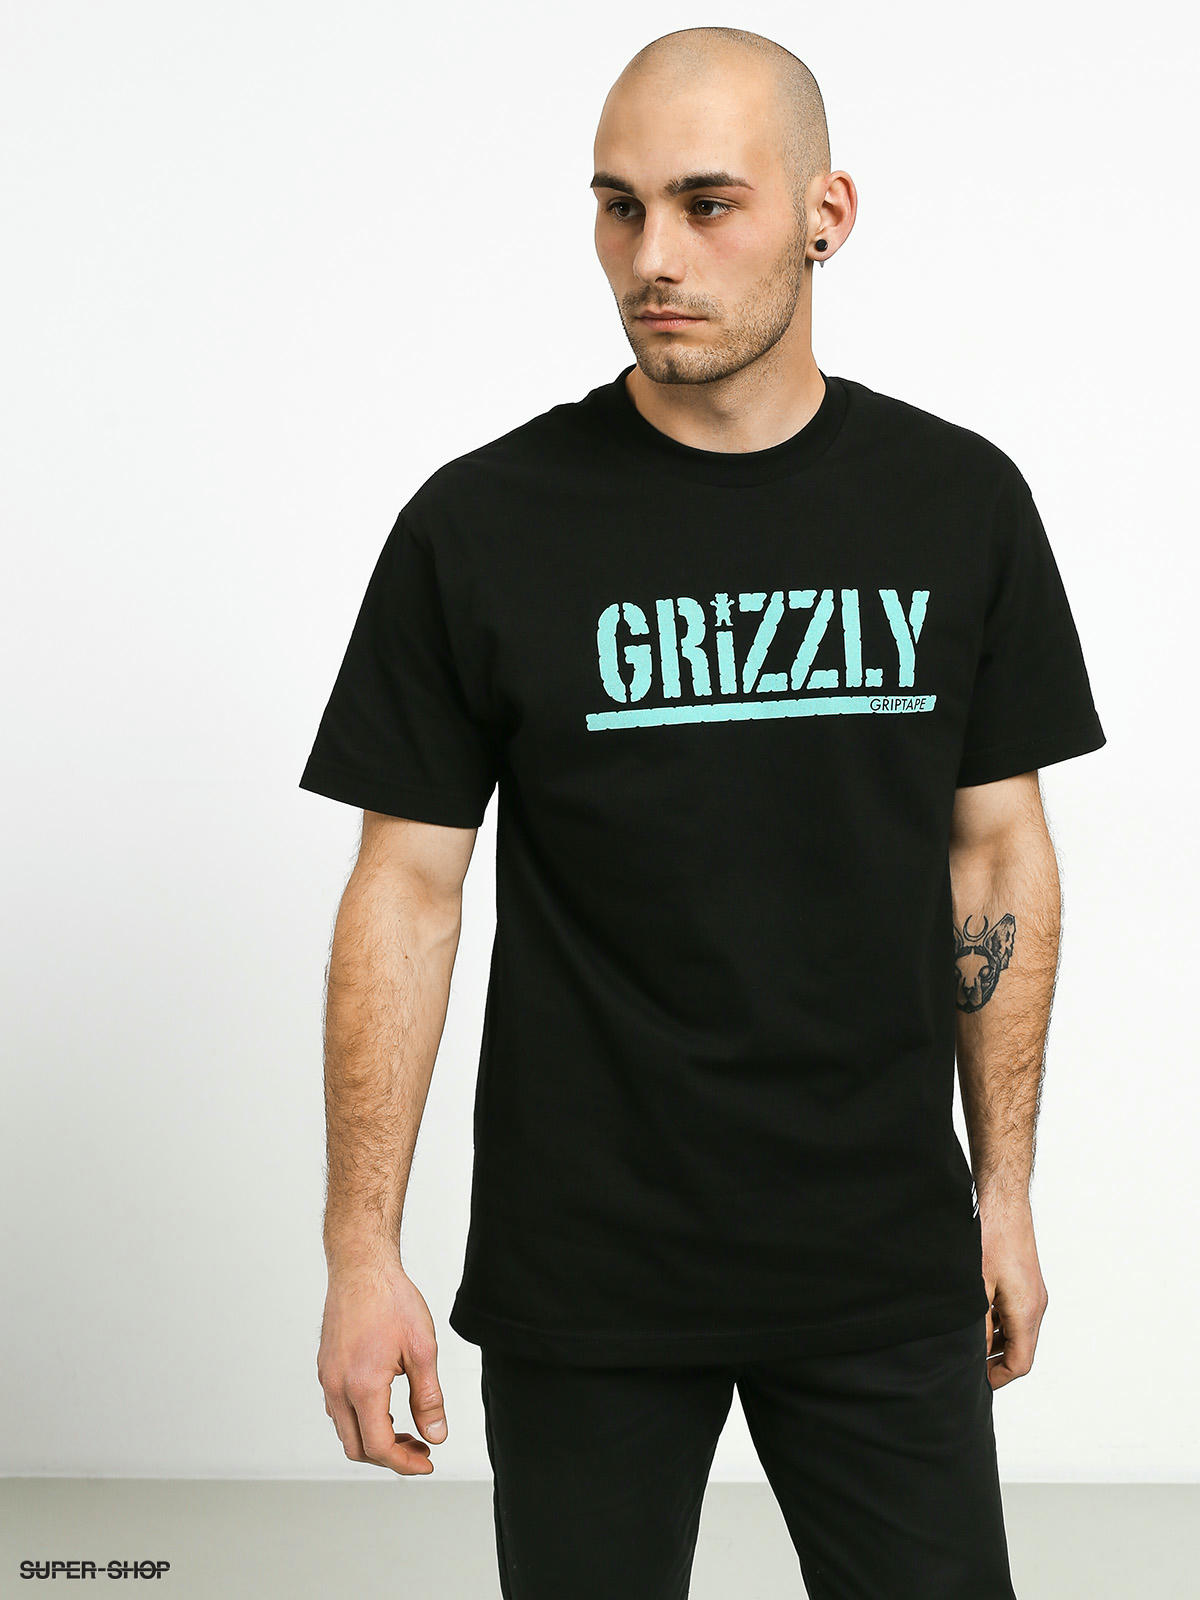 Grizzly Griptape | SUPER-SHOP